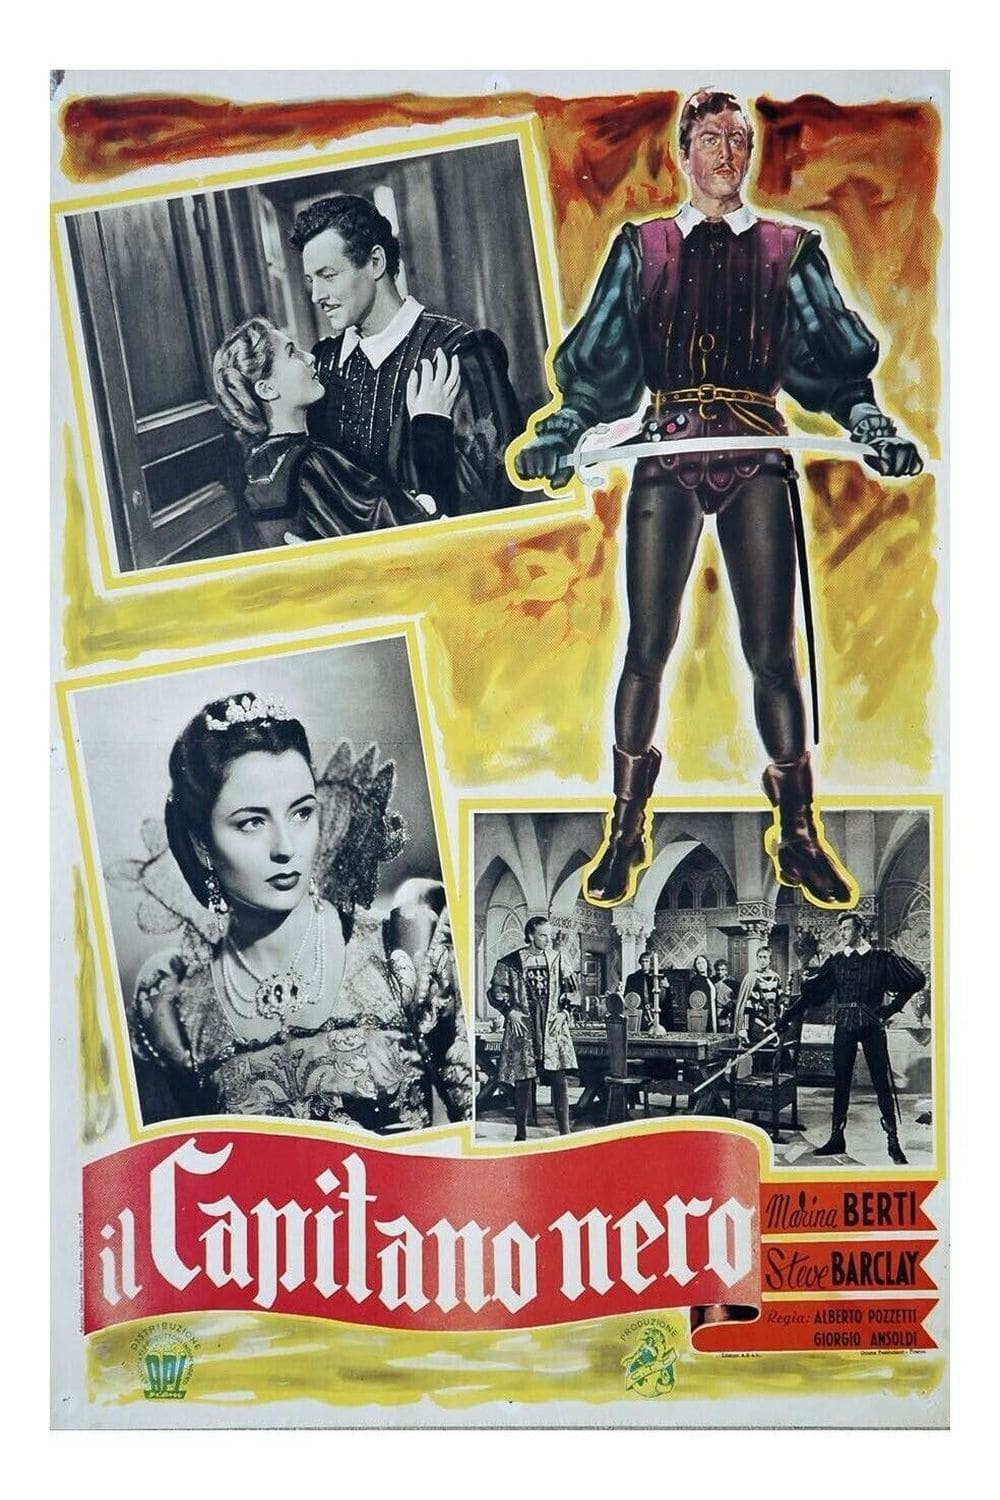 Il capitano nero (1951)